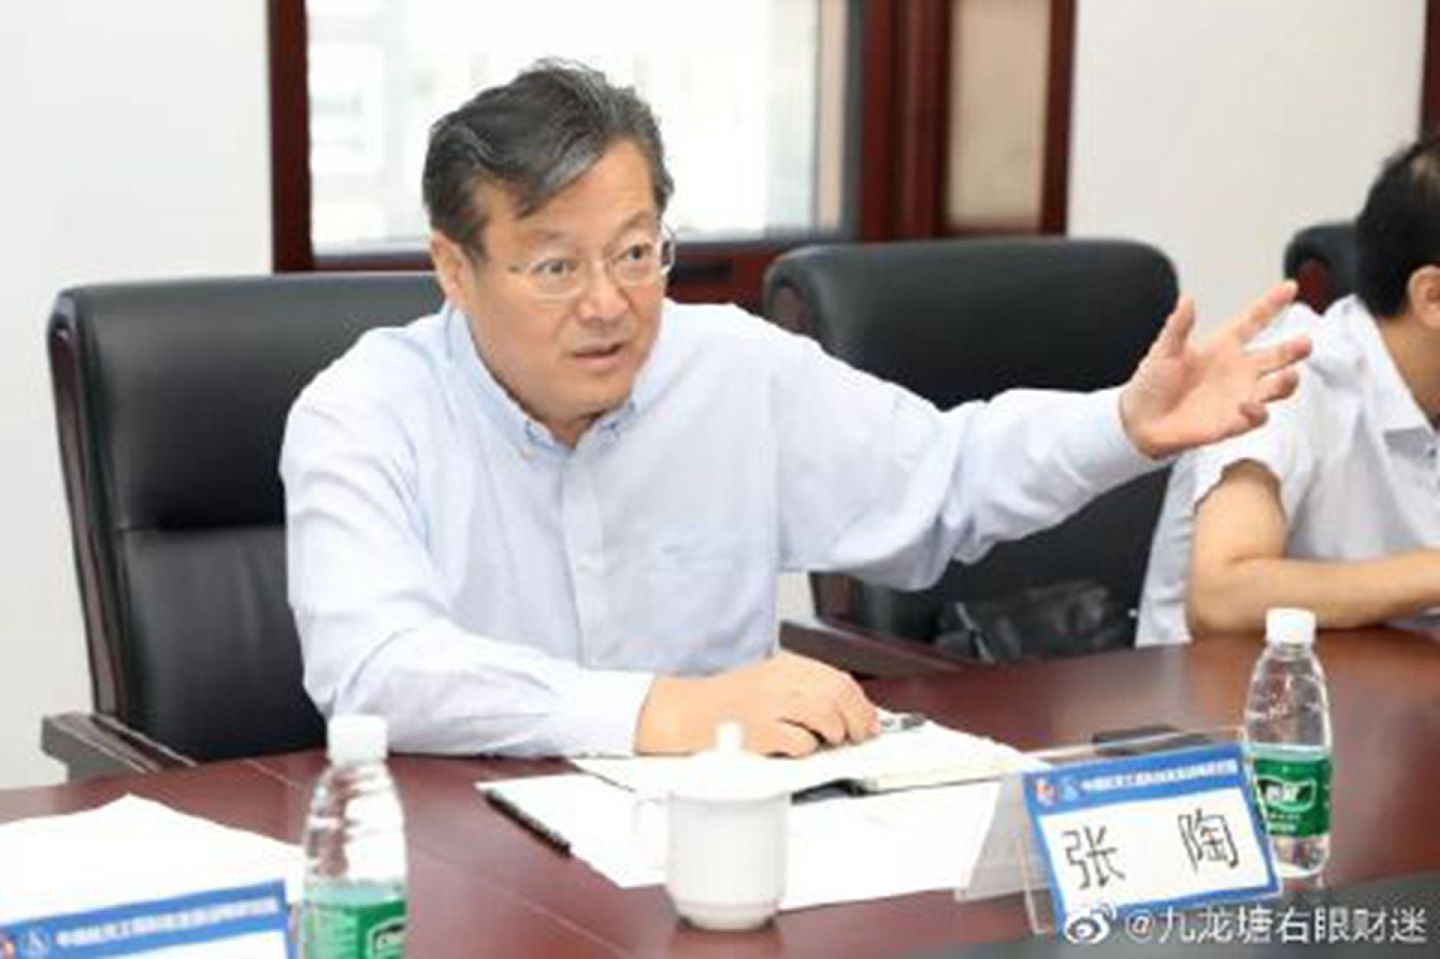 张陶现任中国航天投资控股有限公司党委书记、董事长，事发后已被停职。（微博@九龙塘右眼财迷）